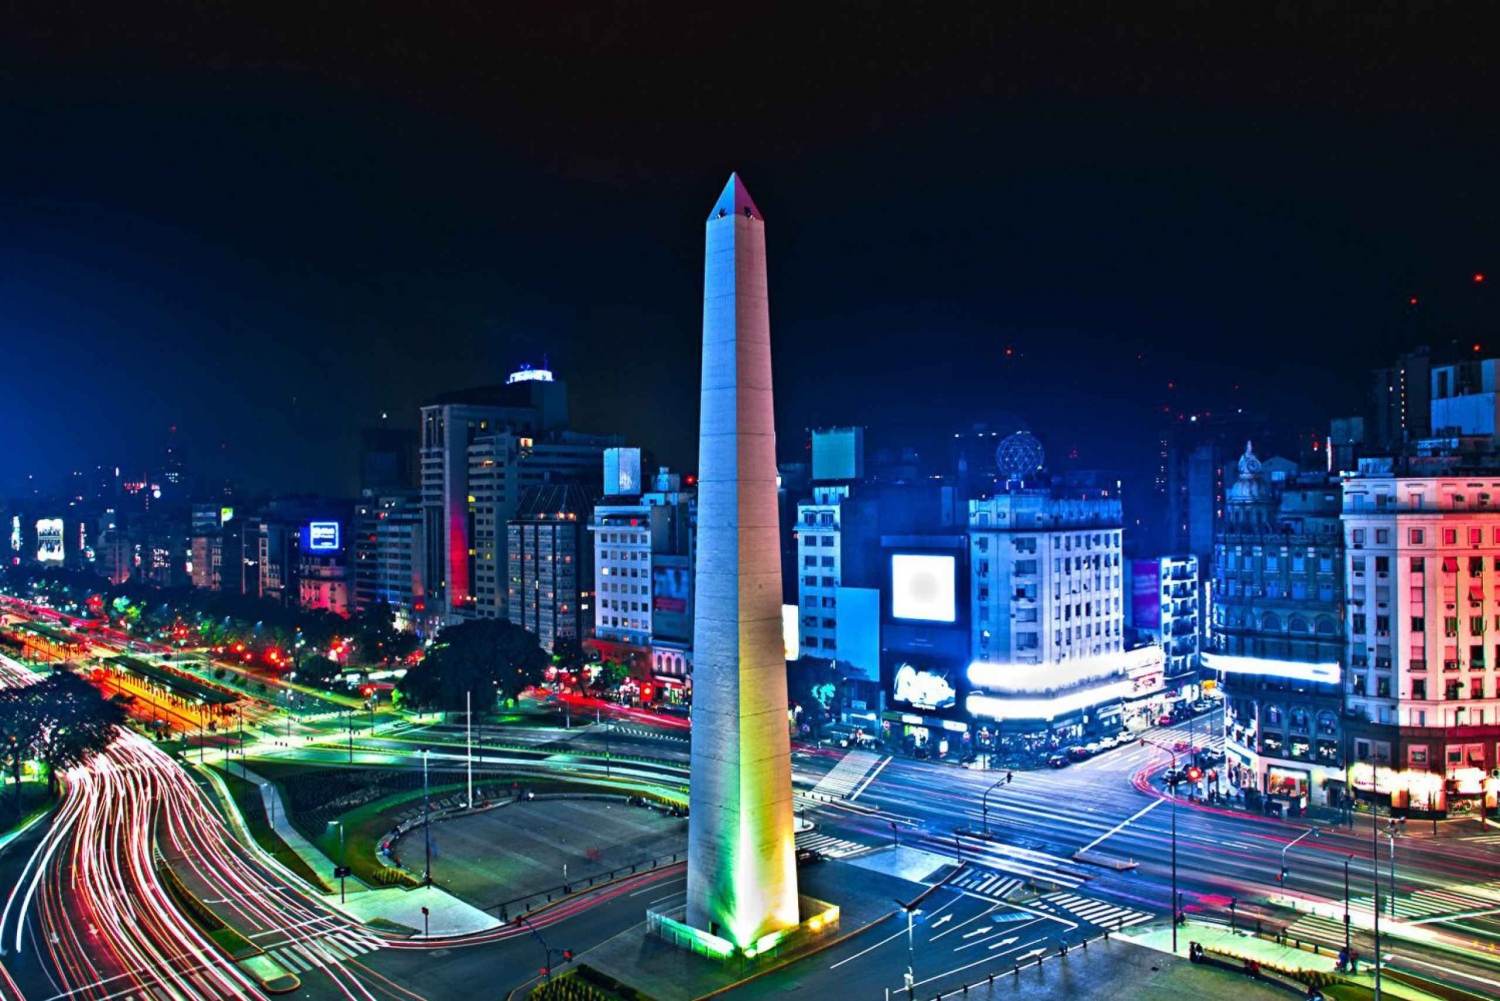 Buenos Aires à Noite: Passeio Turístico em Grupos Pequenos